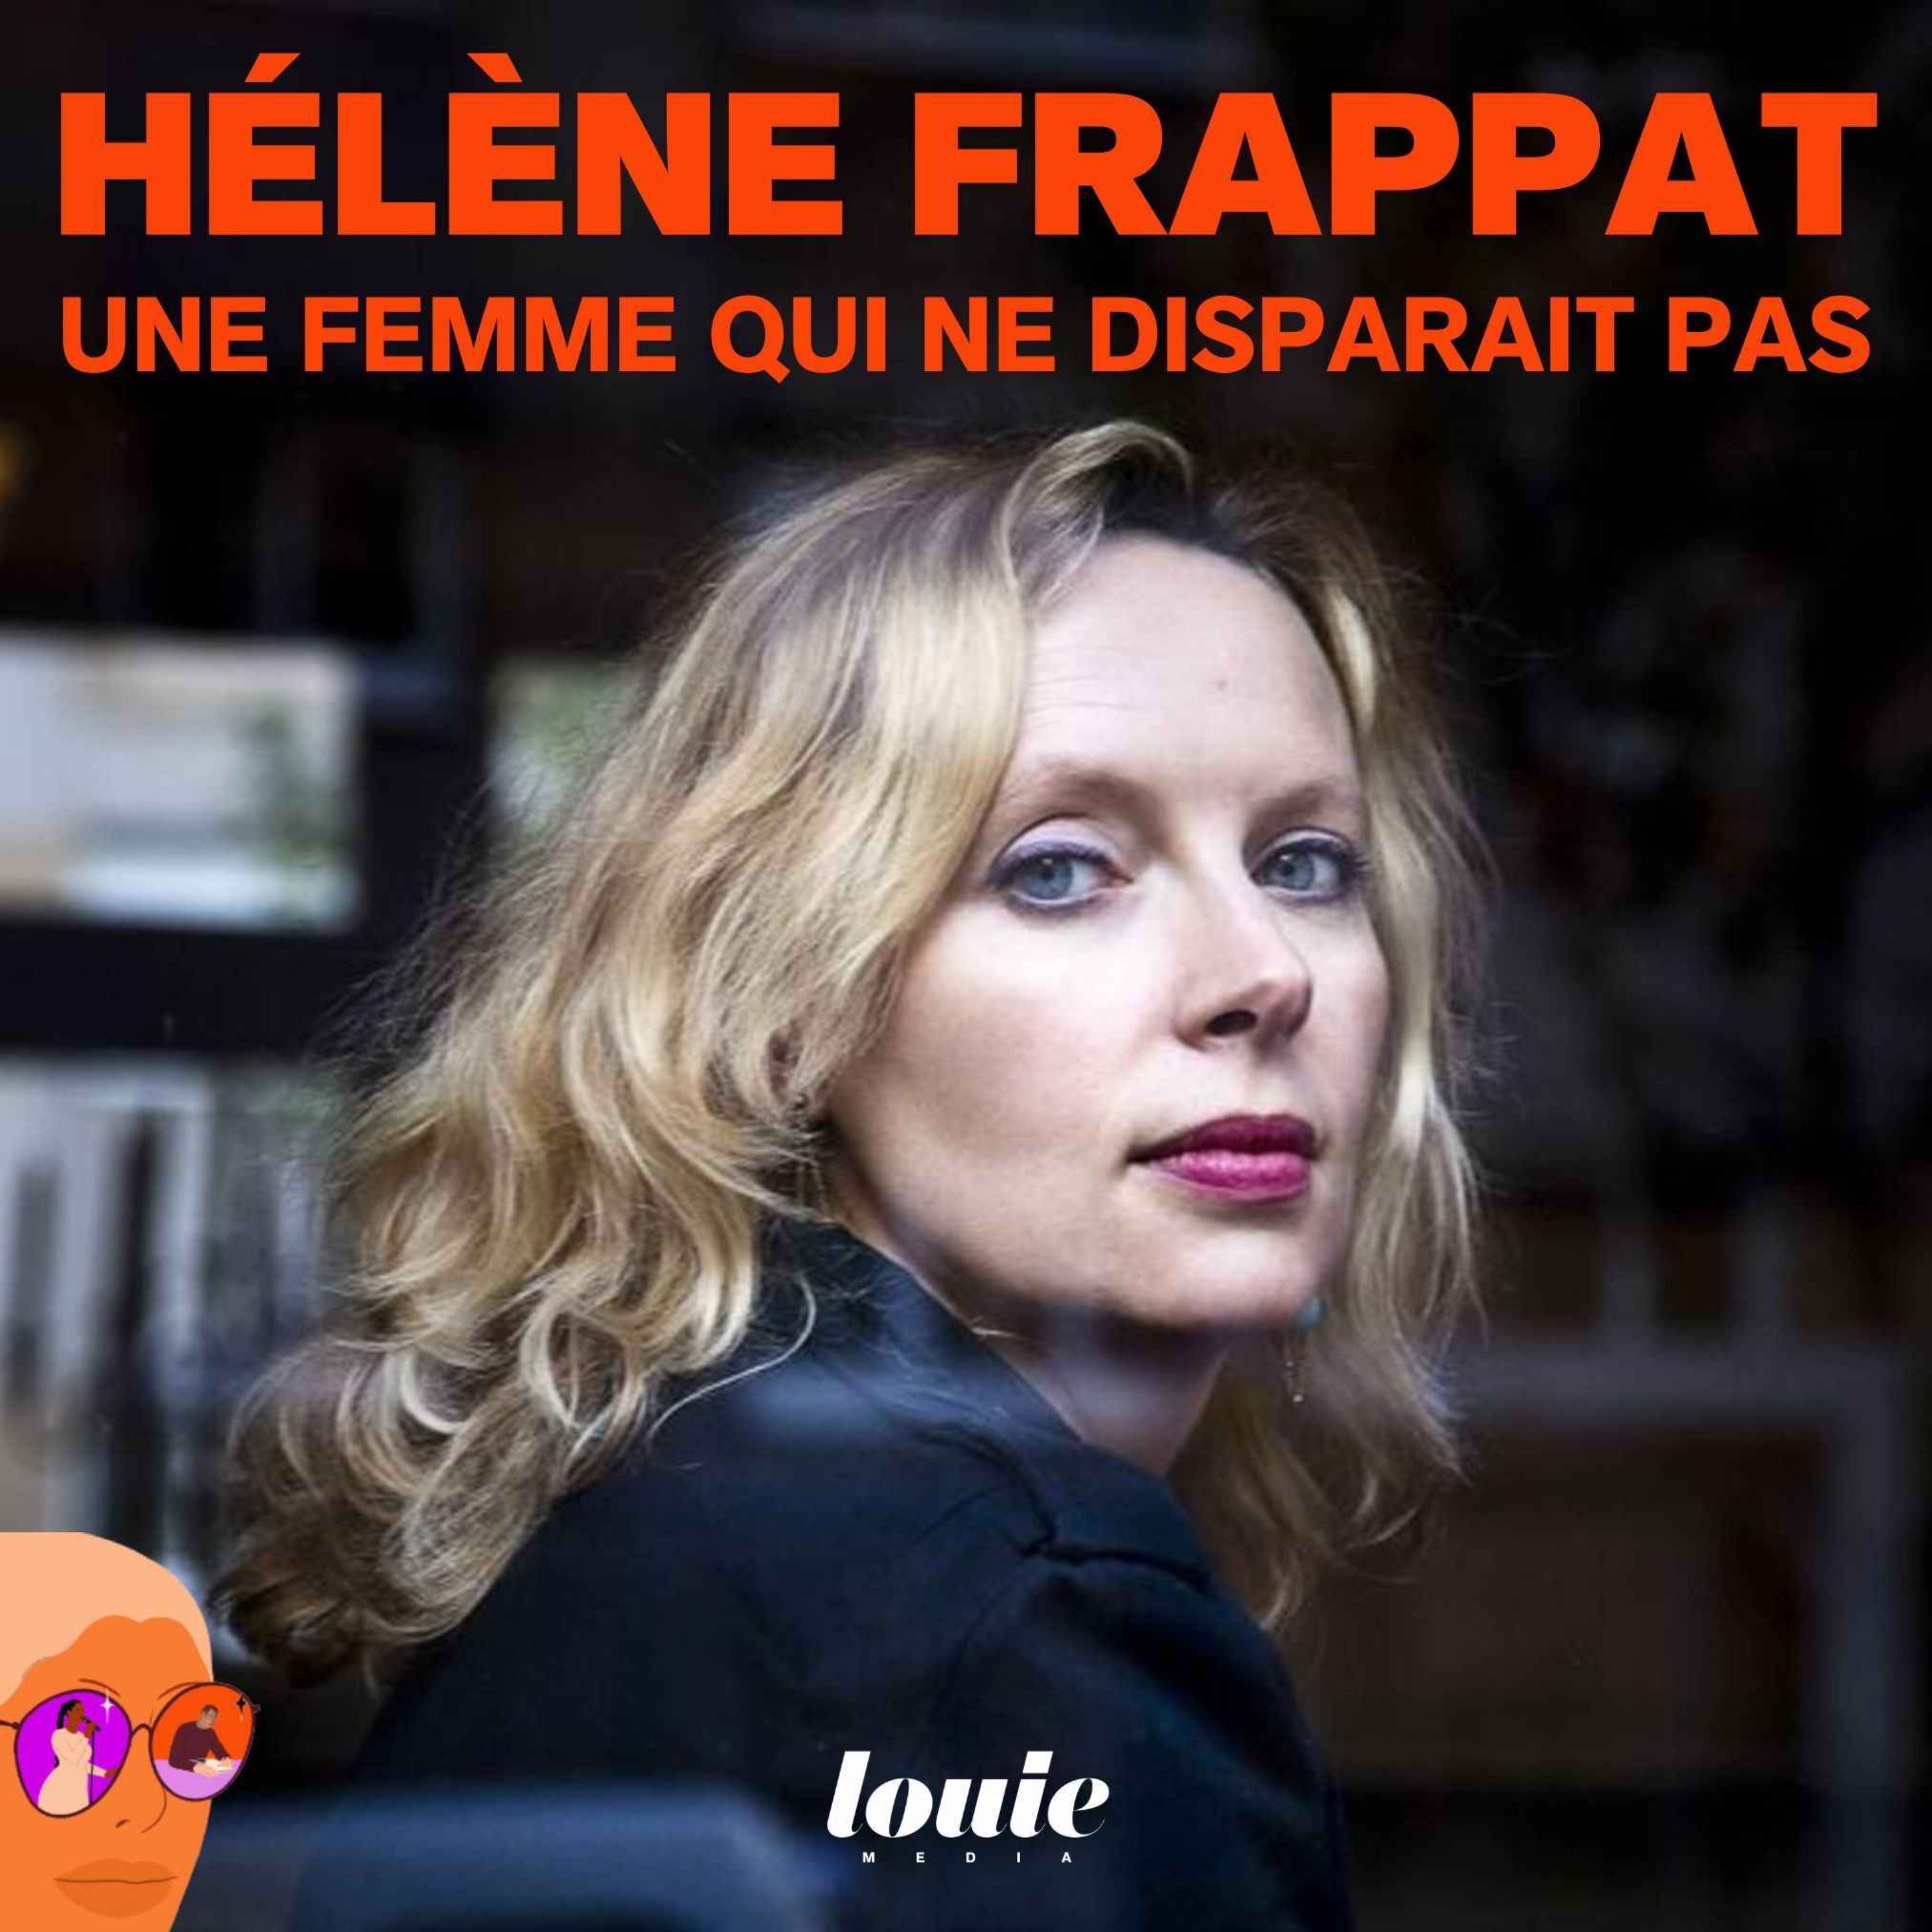 Hélène Frappat, une femme qui ne disparait pas